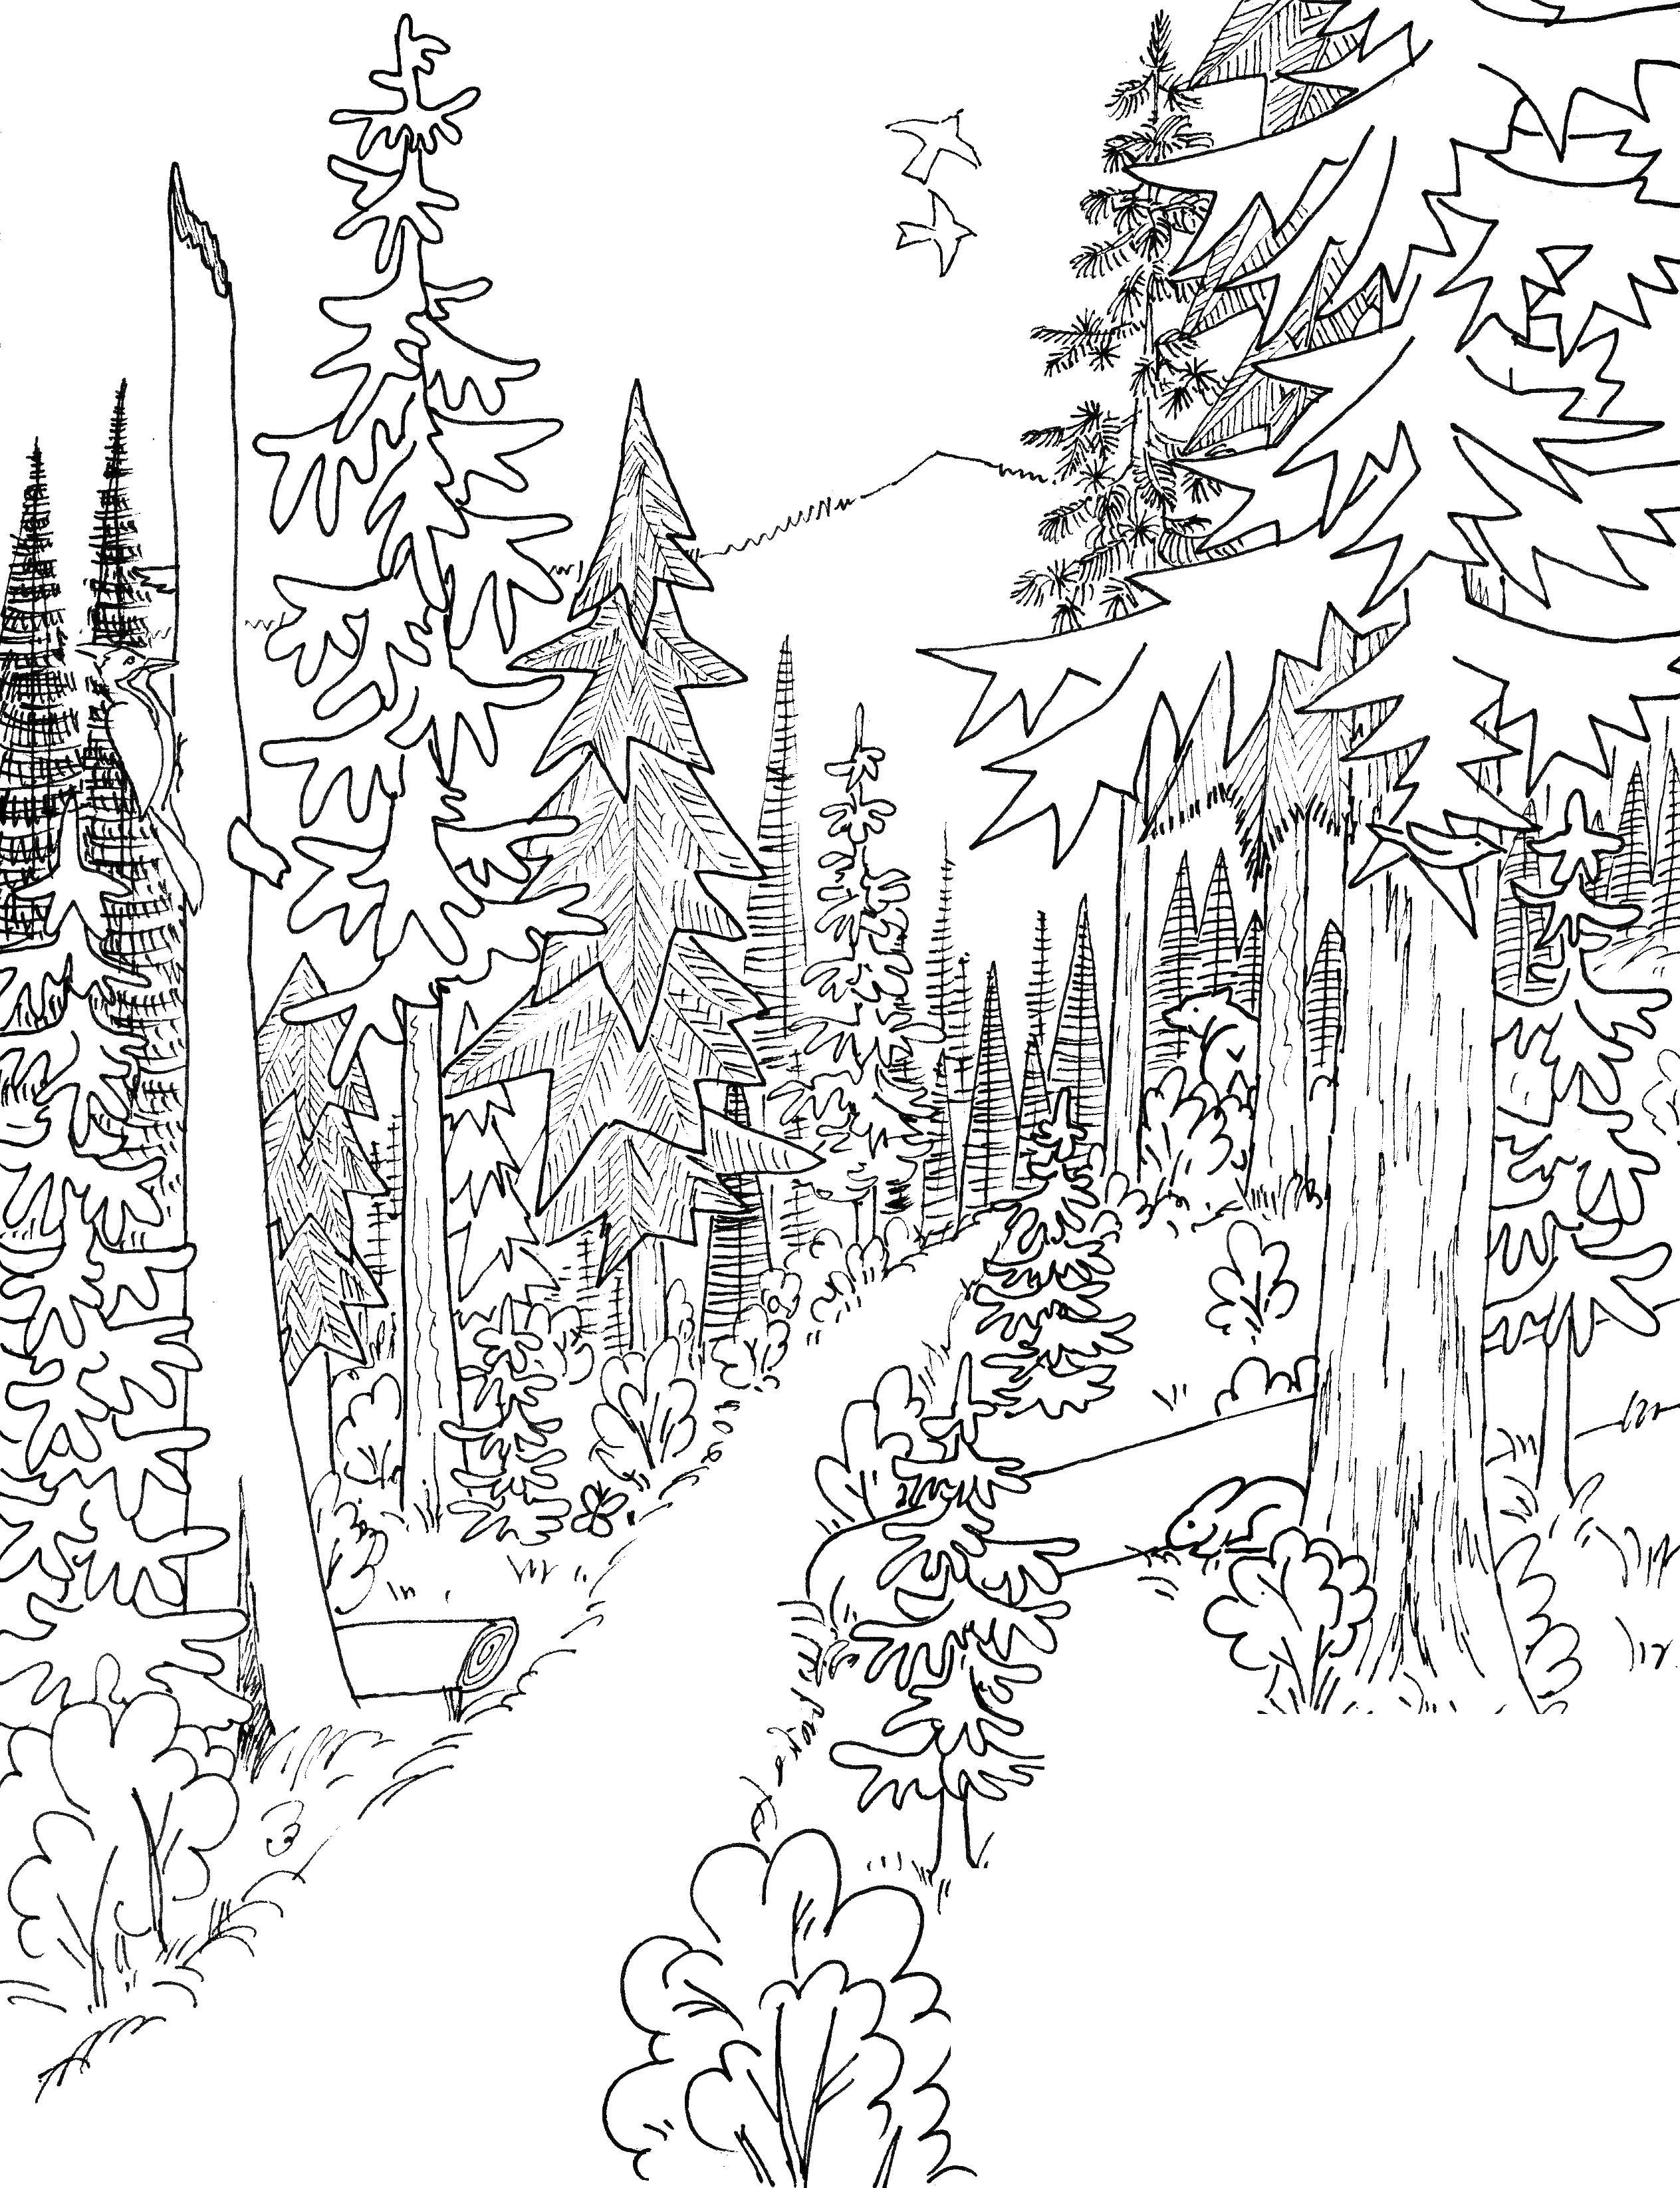 Картинки лес распечатать. В лесу. Раскраска. Раскраска леса. Лес картинка для детей раскраска. Лес рисунок для детей раскраска.